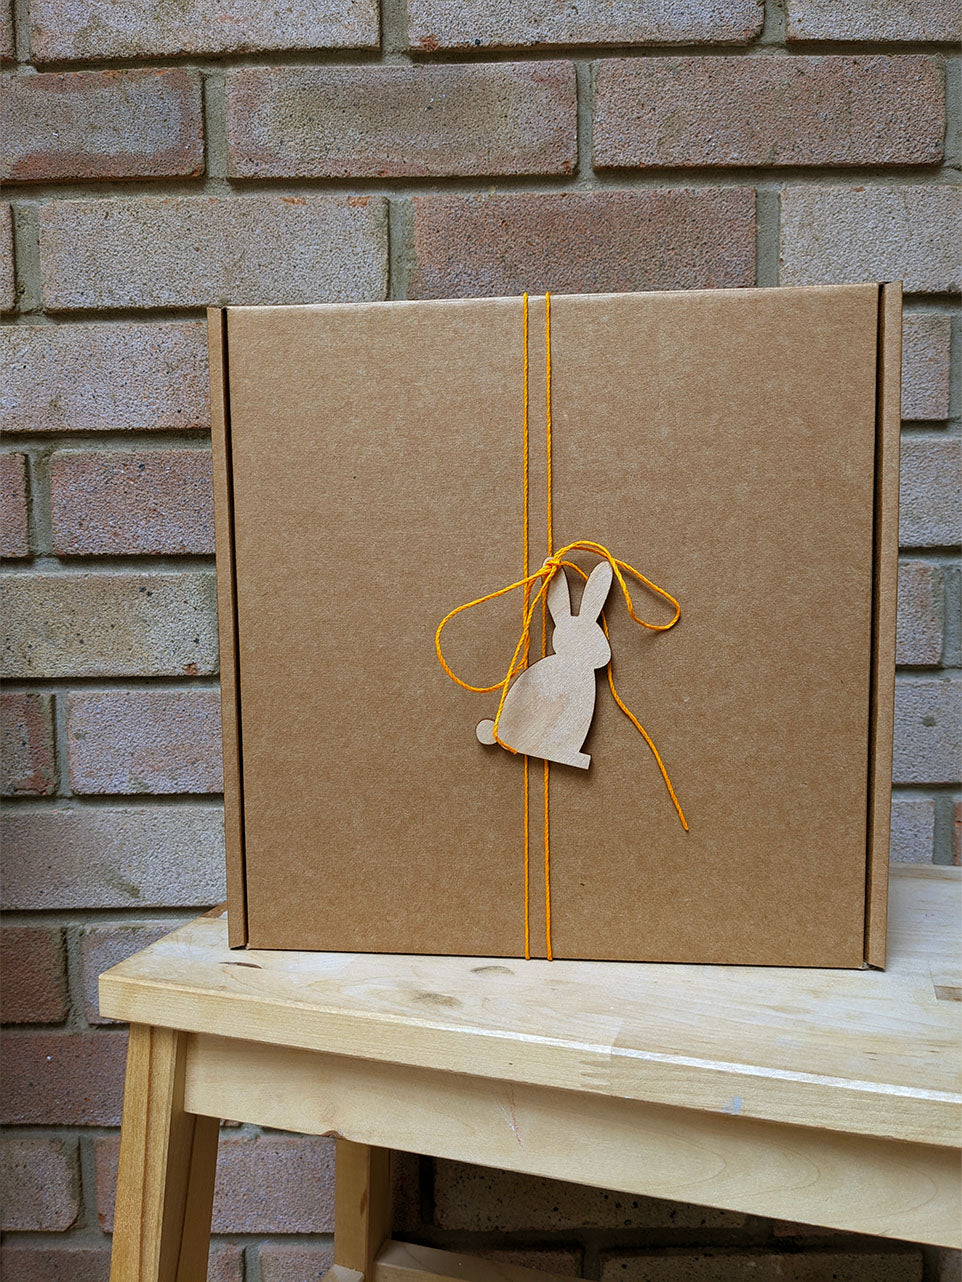 Woodland gift box, age 2-3